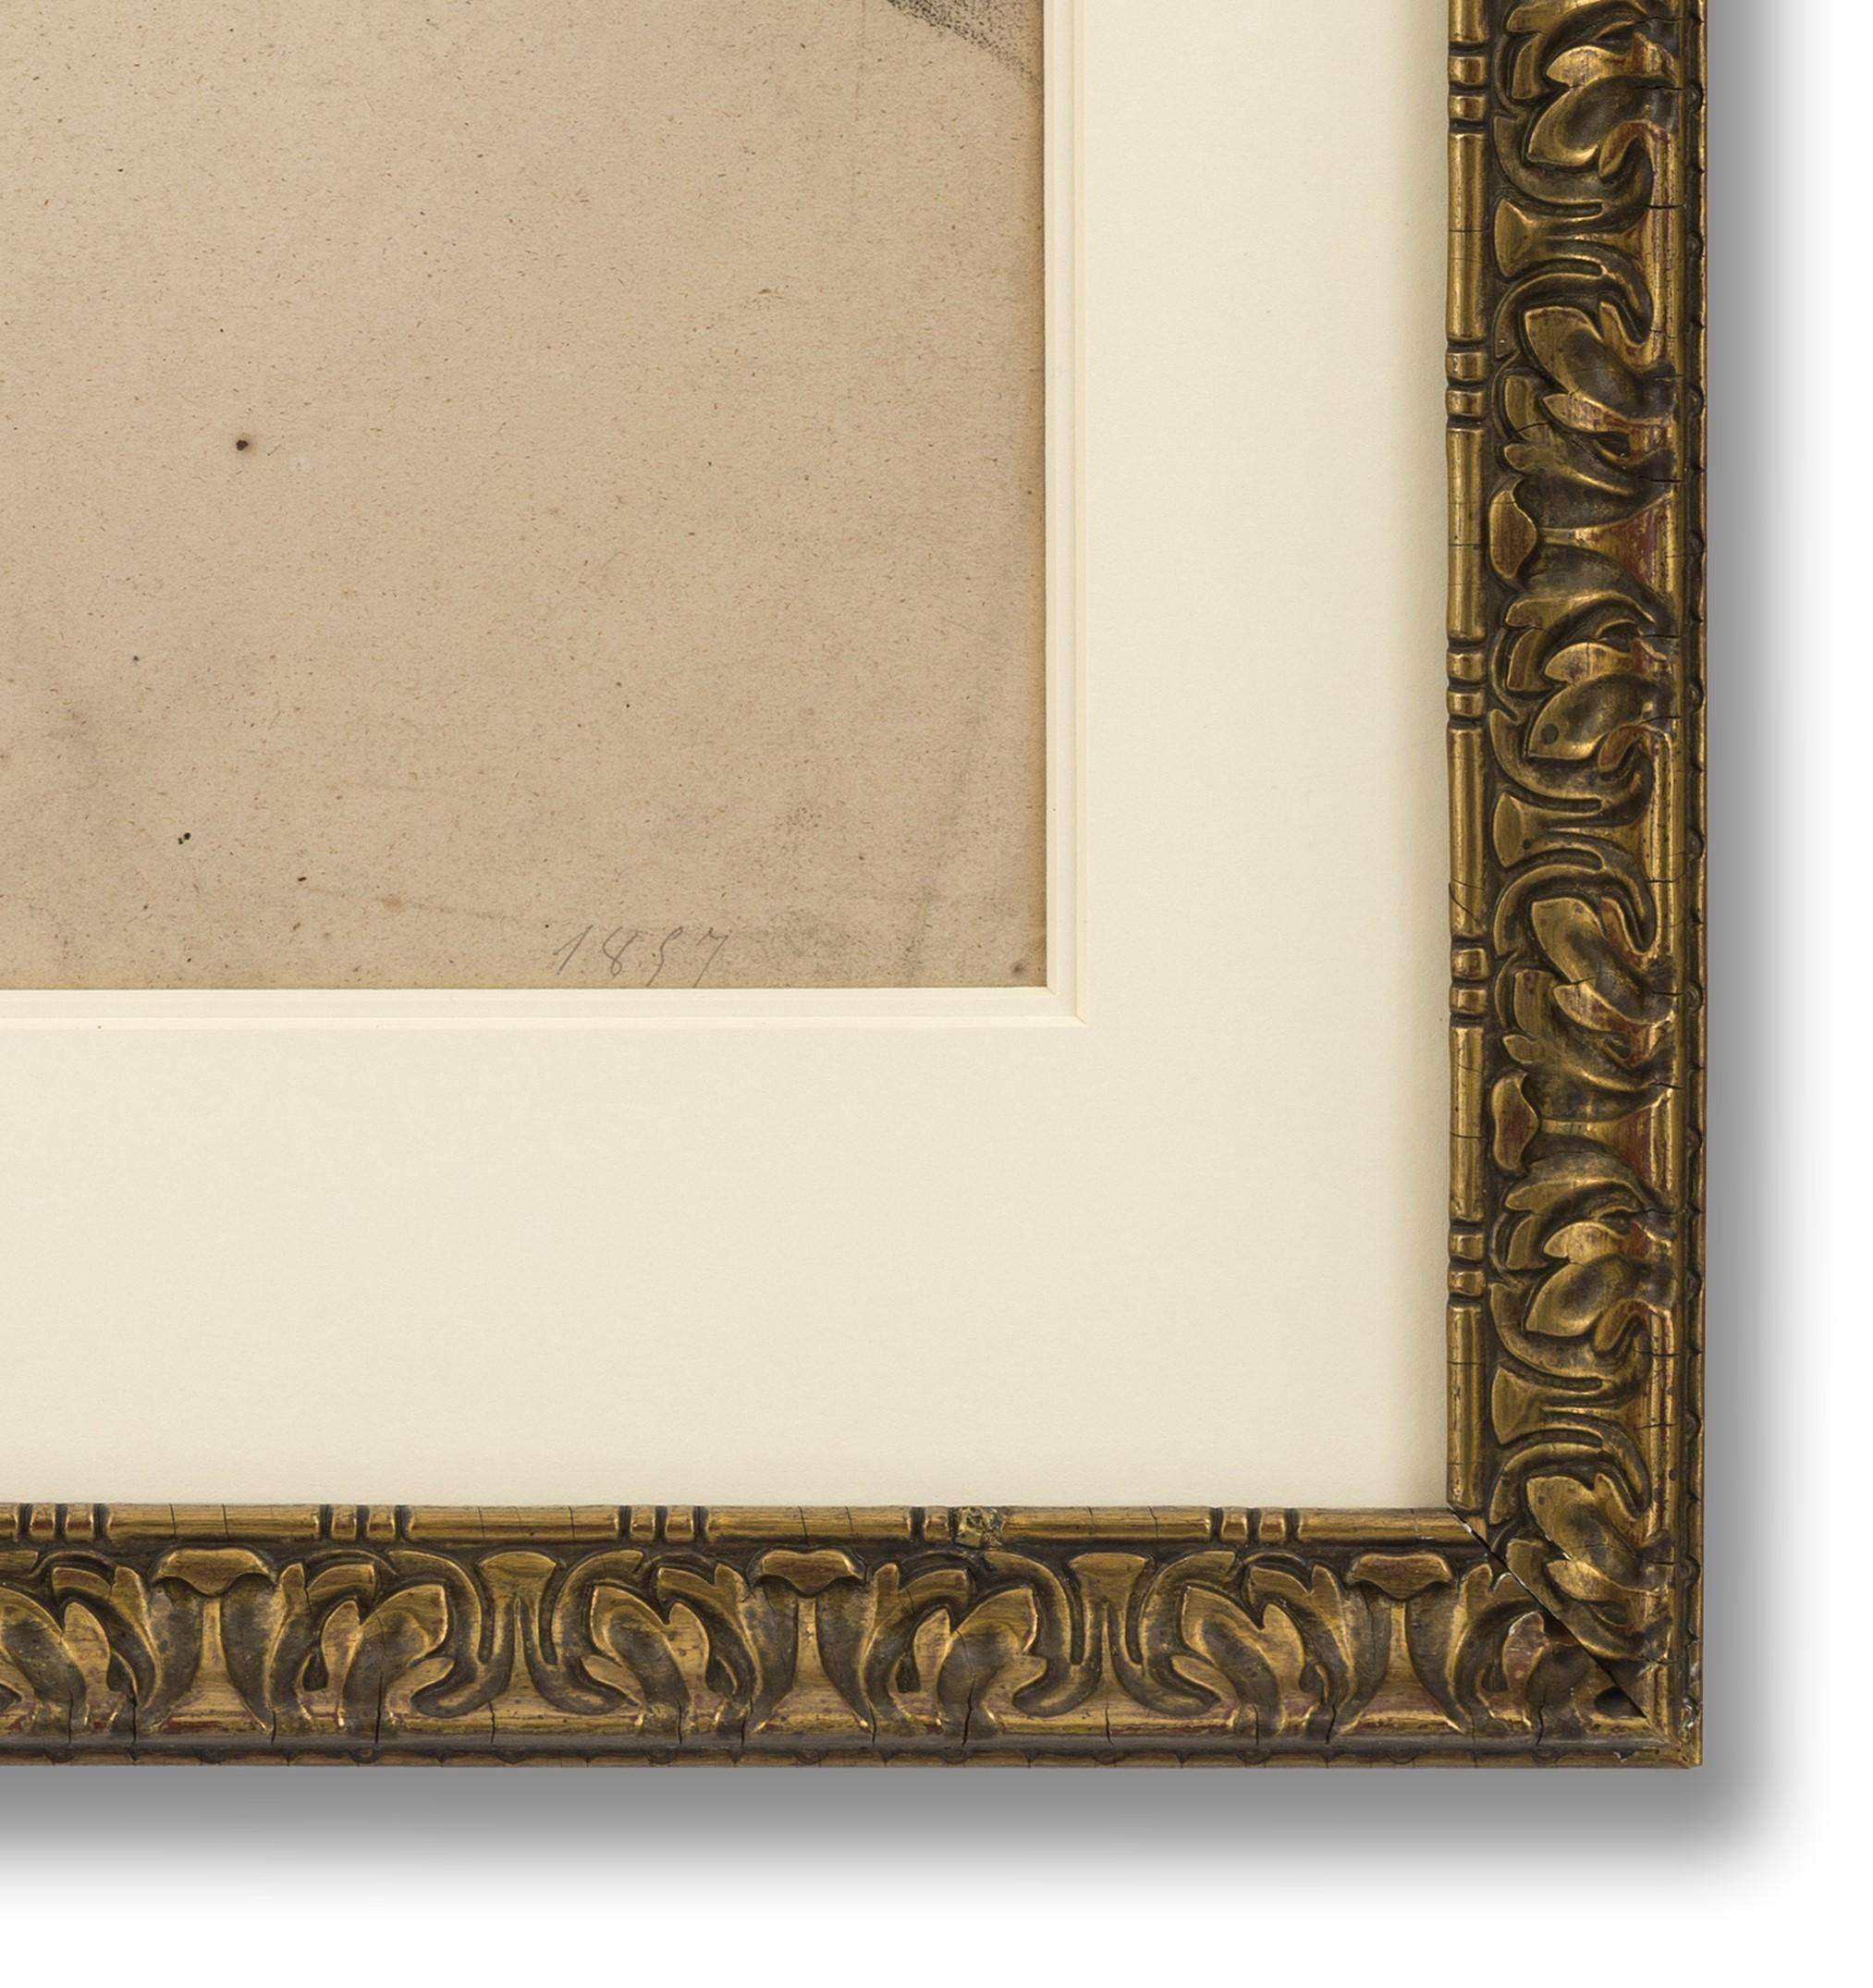 Crayon sur papier, daté (en bas à droite), 55cm x 44cm (76cm x 64cm encadré)

Les dessins et les peintures de nus étaient au cœur de la formation artistique académique en Europe à partir du XVIe siècle. La pratique du dessin répété du nu, et en